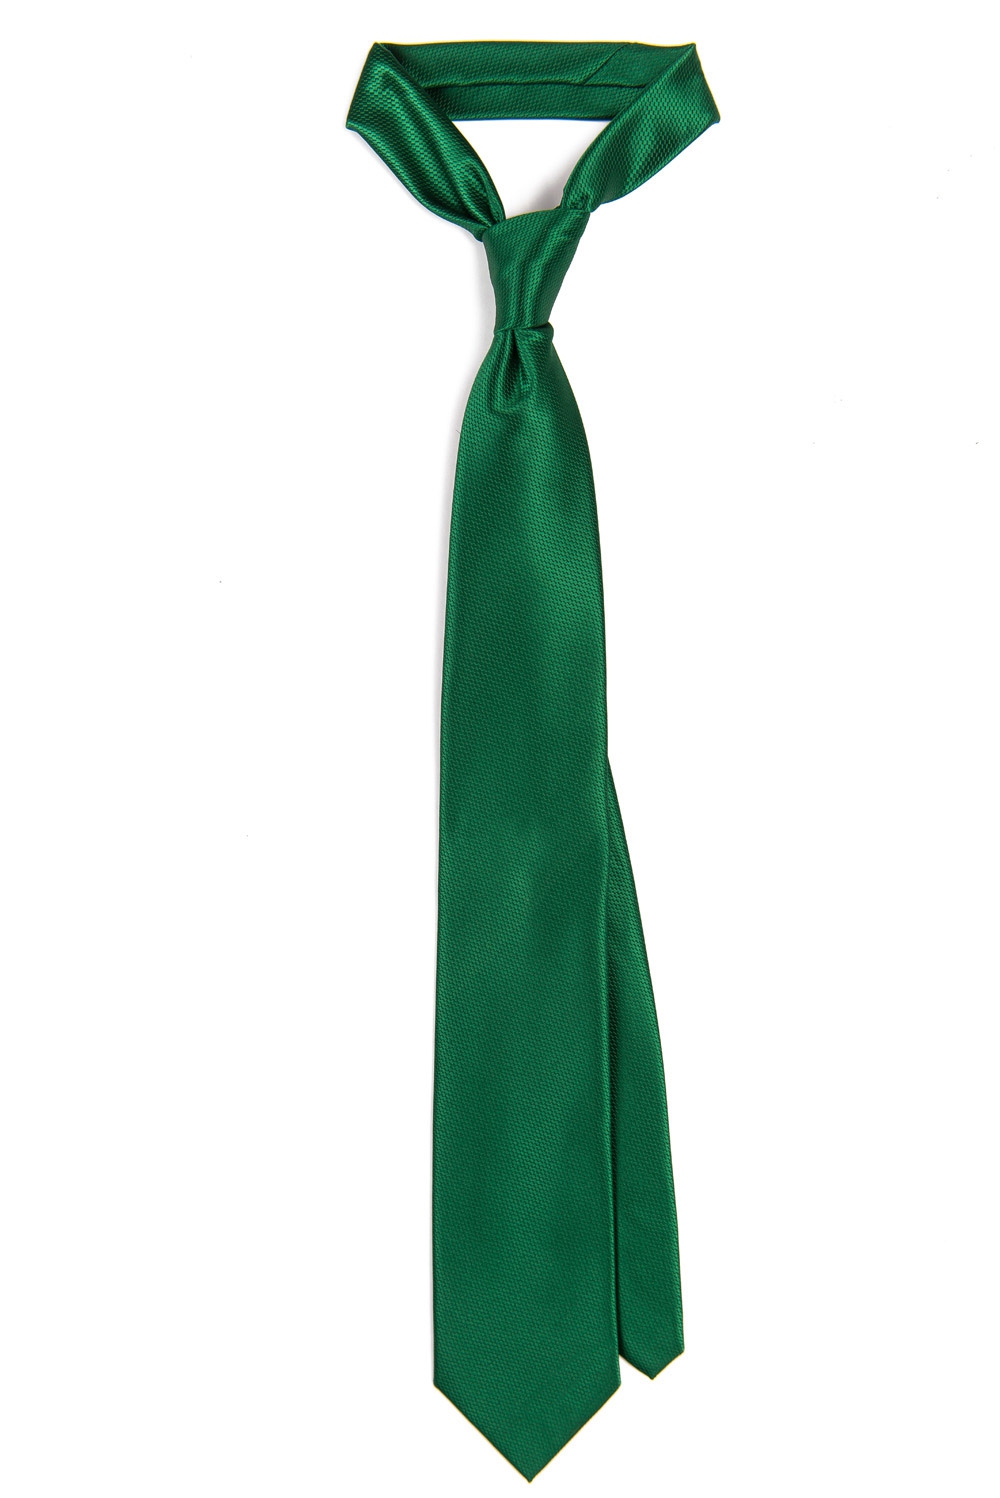 Cravata poliester verde uni 0